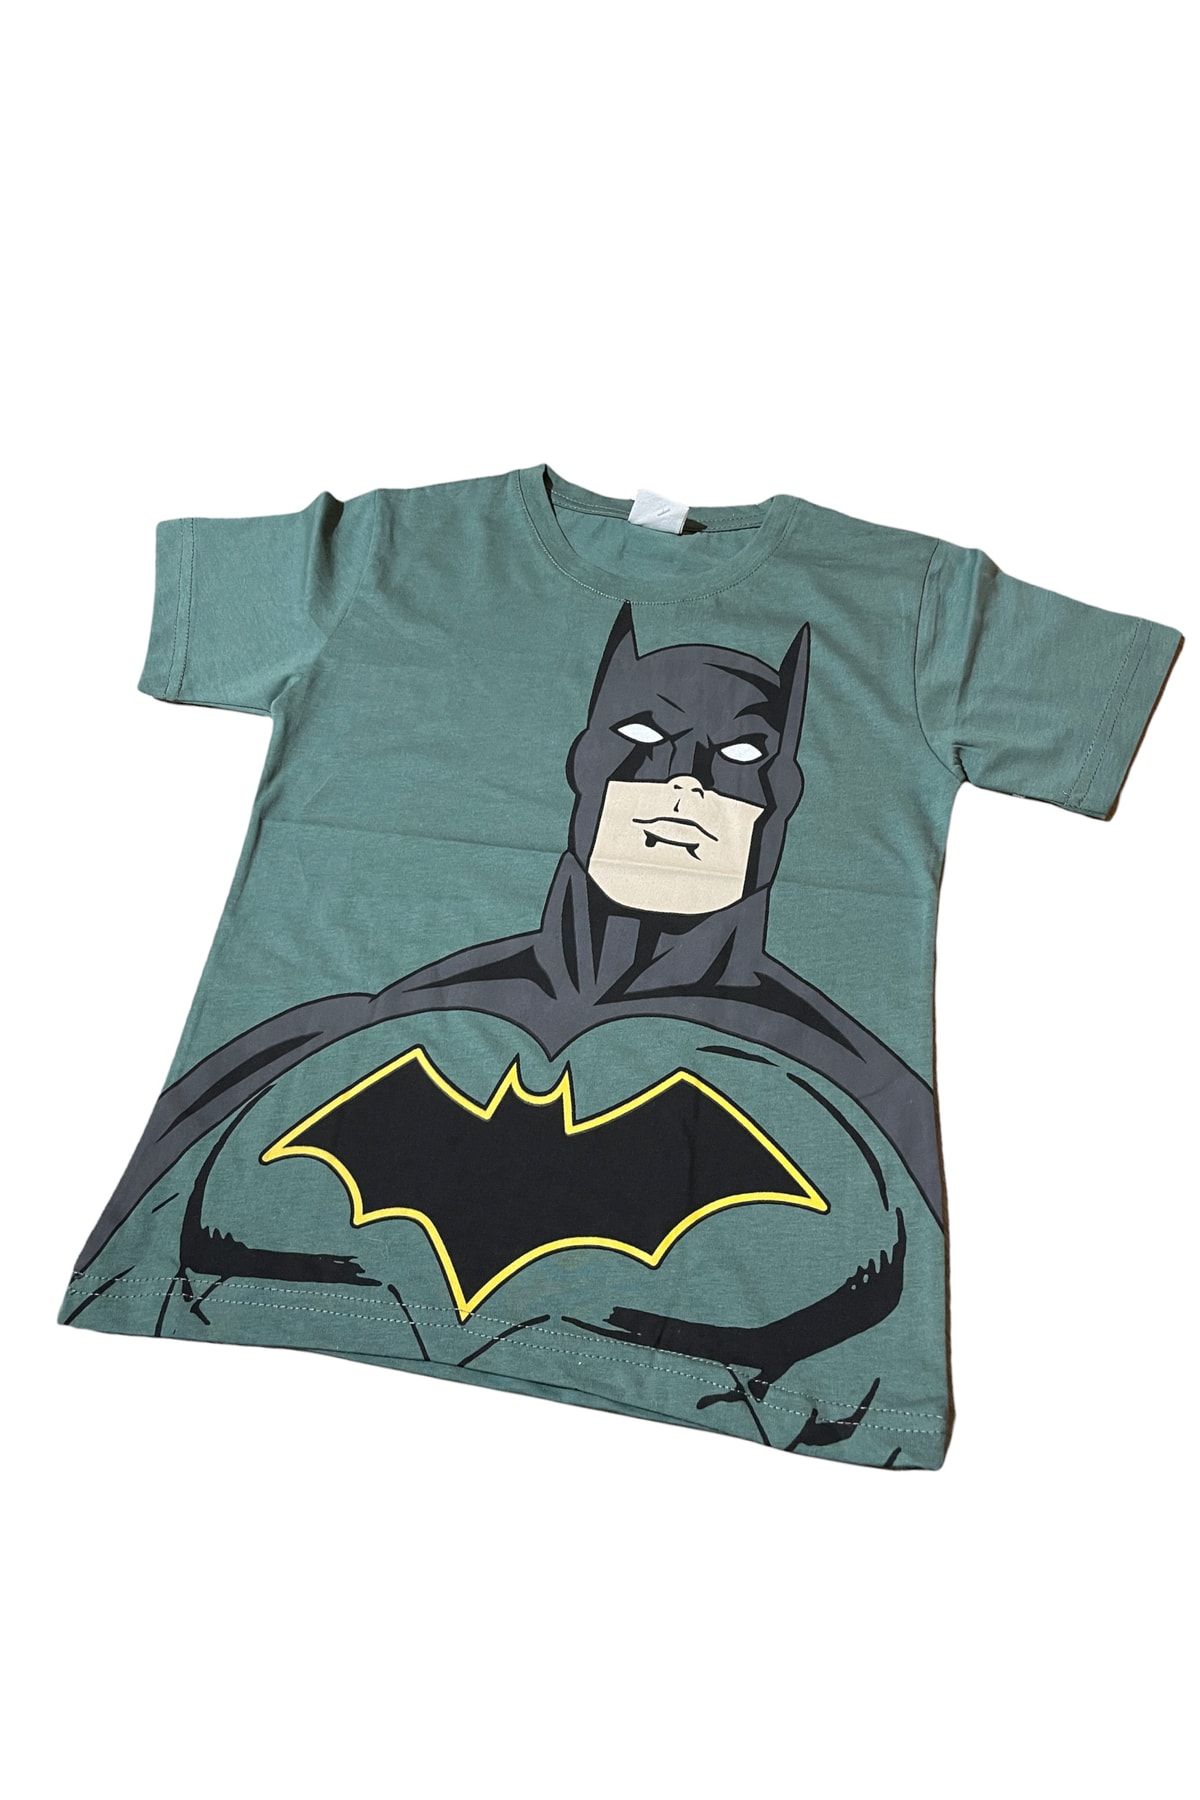 Lolliboomkids Erkek Çocuk Maske Batman Yarasa Adam Karakter T-shirt Yeşil Renk